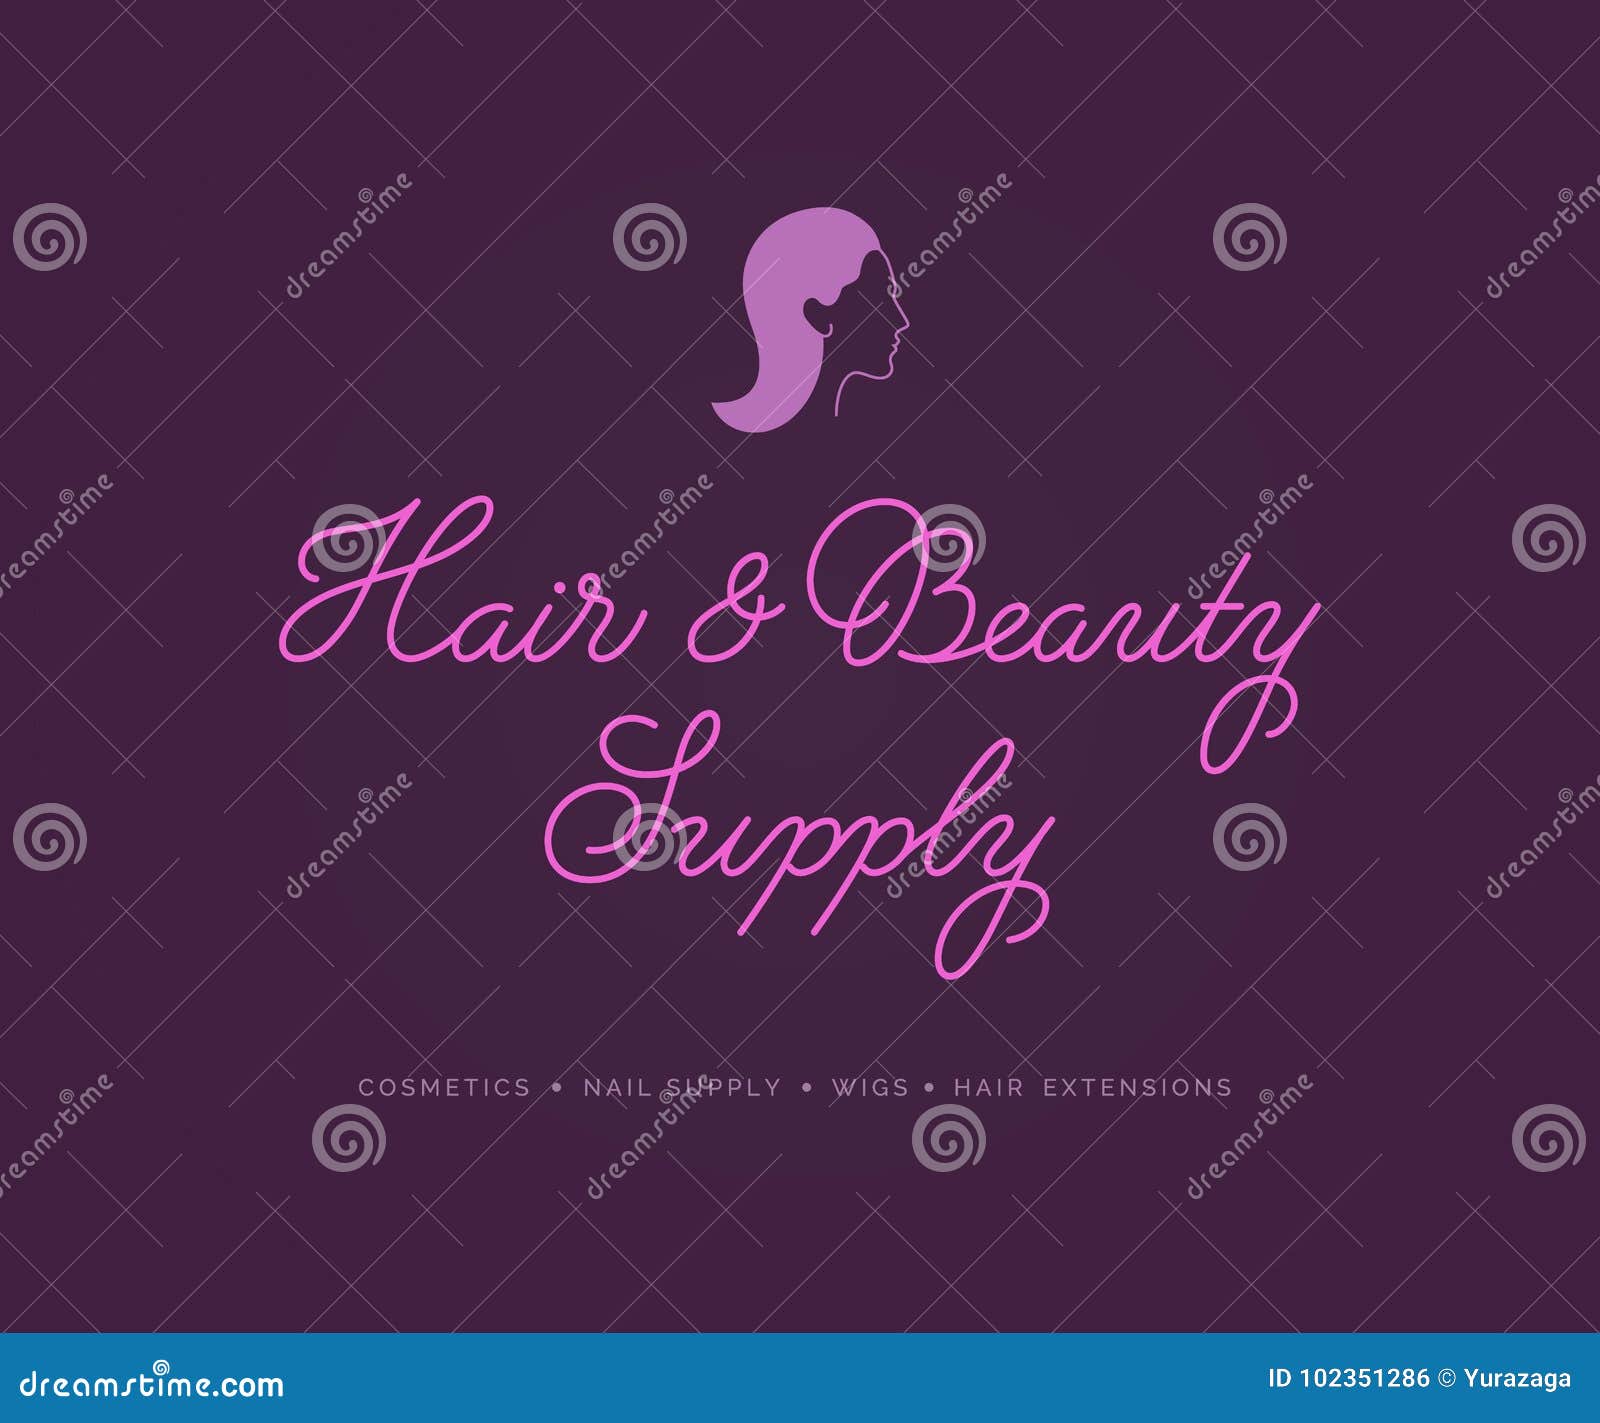 Beauty Hair Supply Stock Illustrations 120 Beauty Hair Supply Stock Illustrations Vectors Clipart Dreamstime